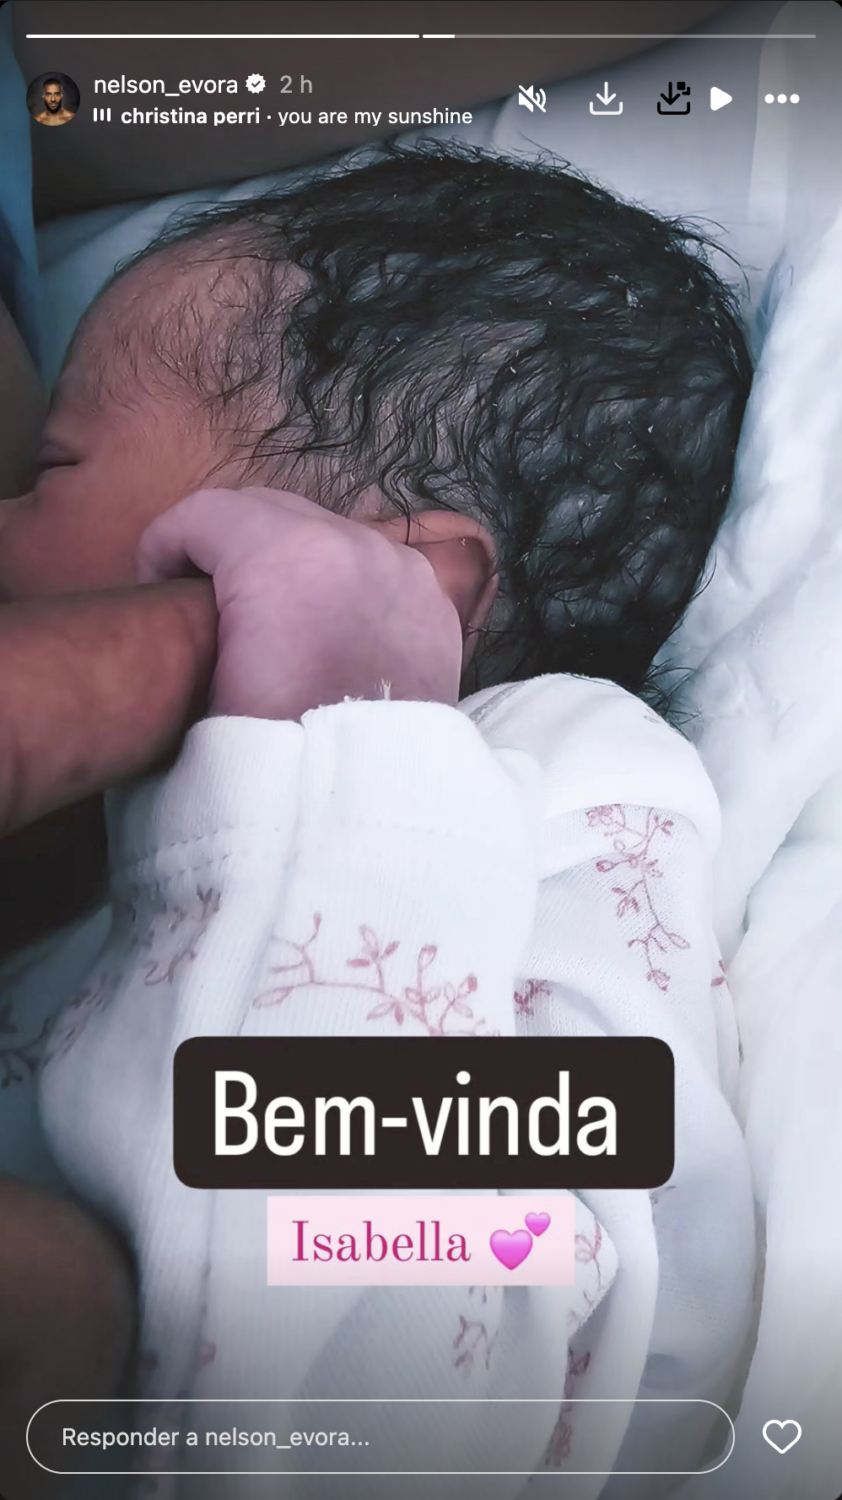 Já nasceu! Nelson Évora já foi pai e revela primeira foto da filha: &#8220;Bem-vinda Isabella&#8221;